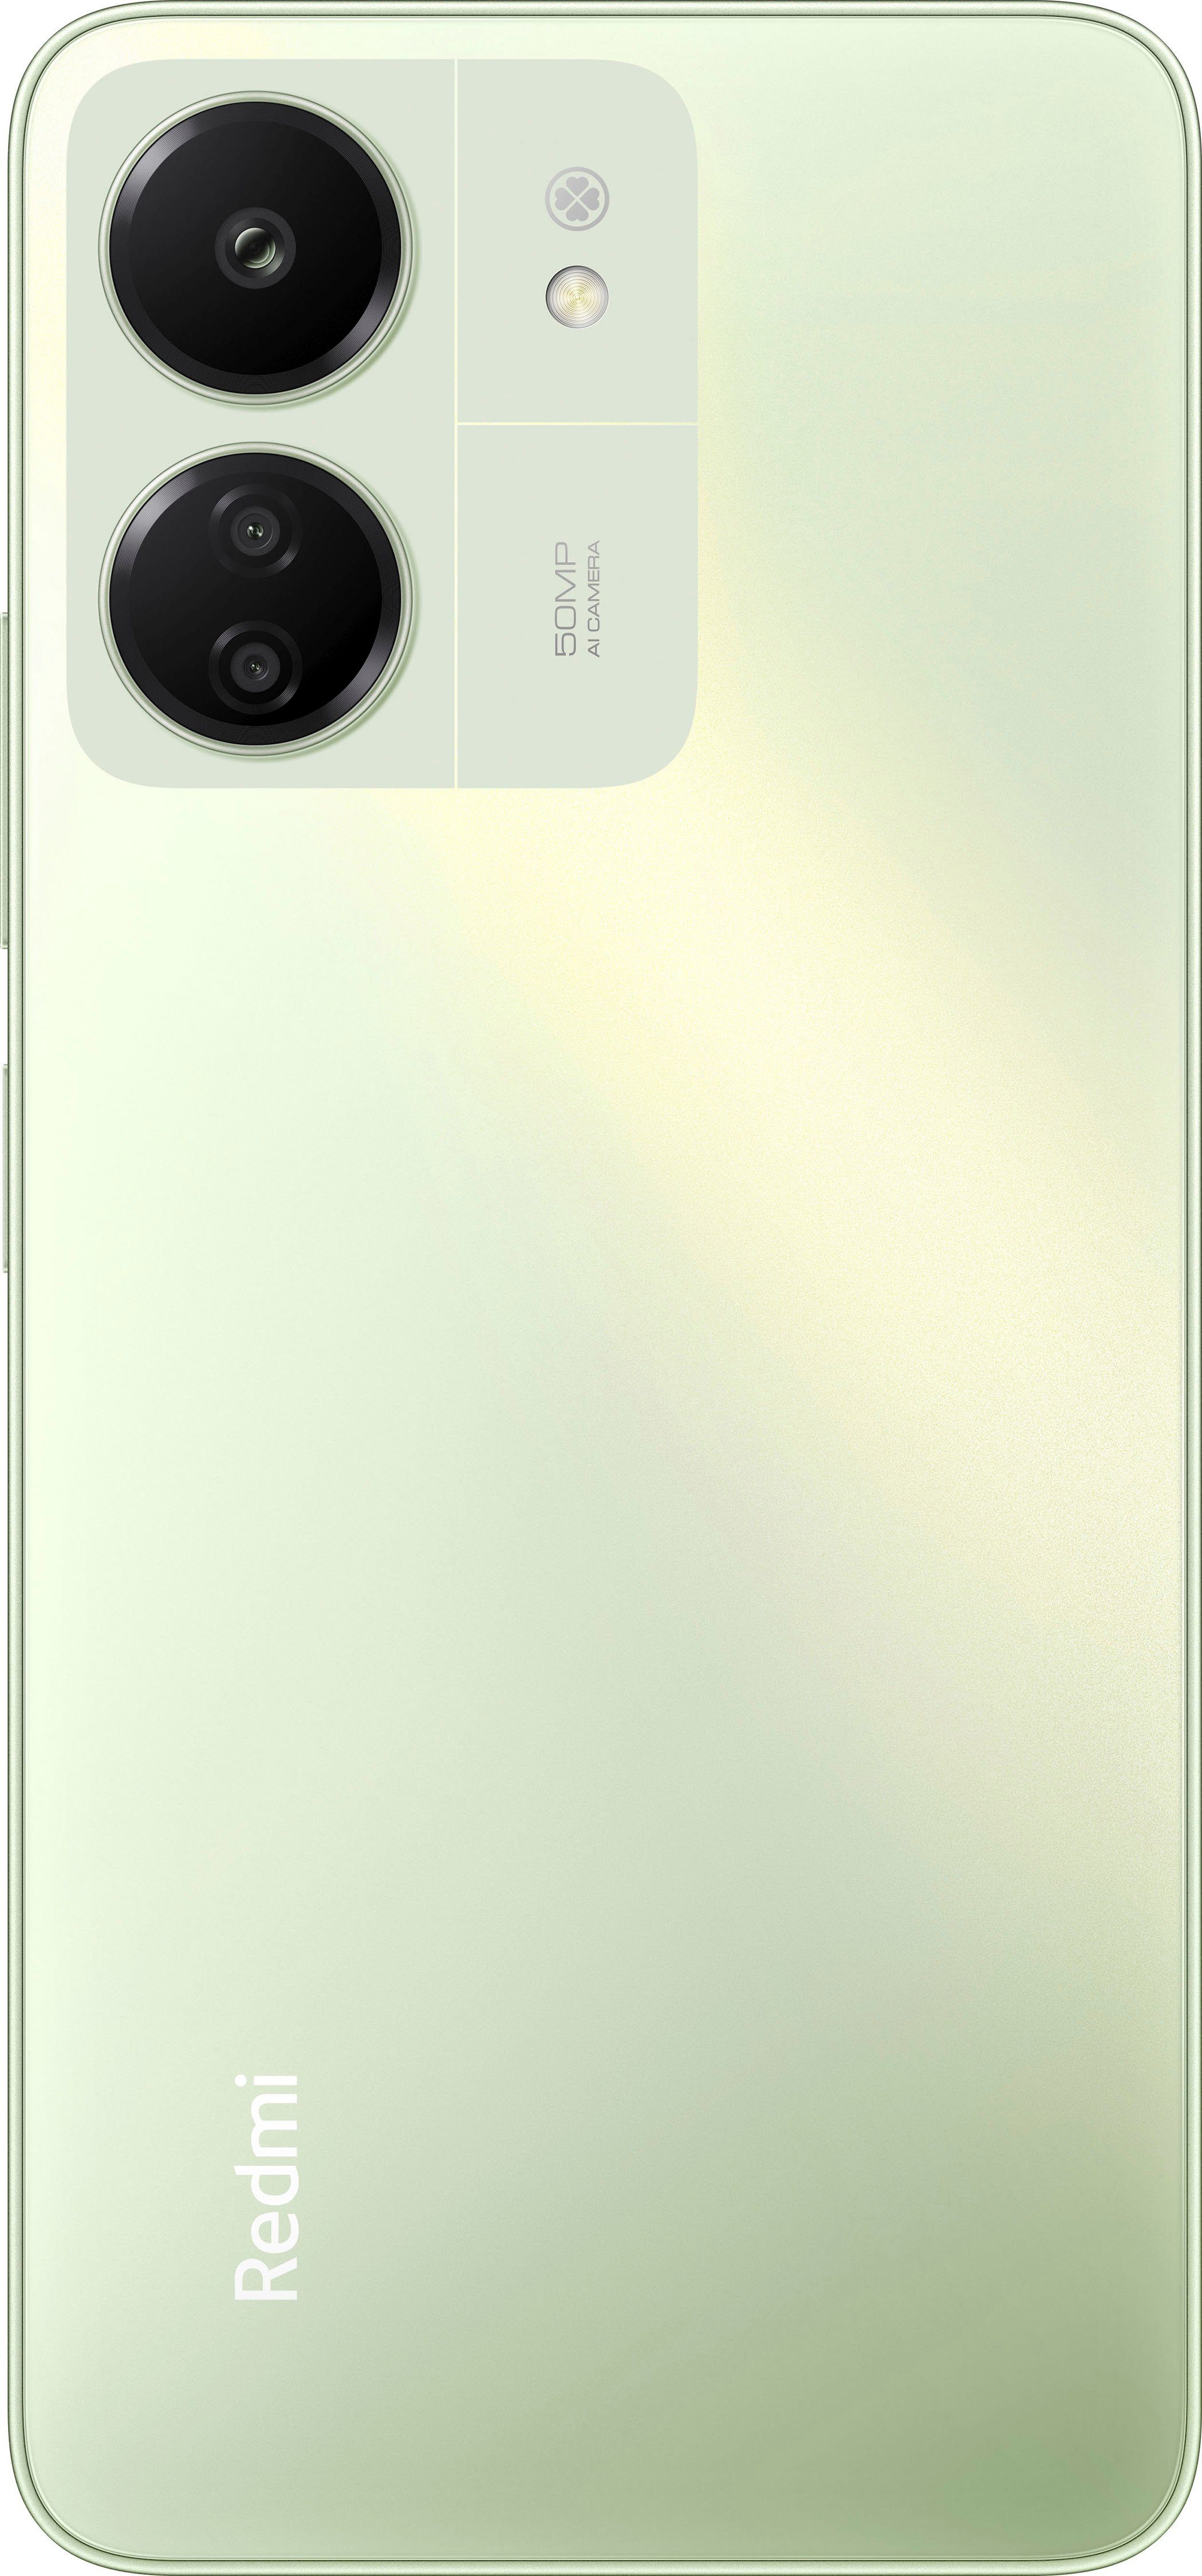 Xiaomi Redmi 13C 8GB+256GB Smartphone Kamera) GB MP Speicherplatz, Hellgrün 50 256 (17,1 cm/6,74 Zoll